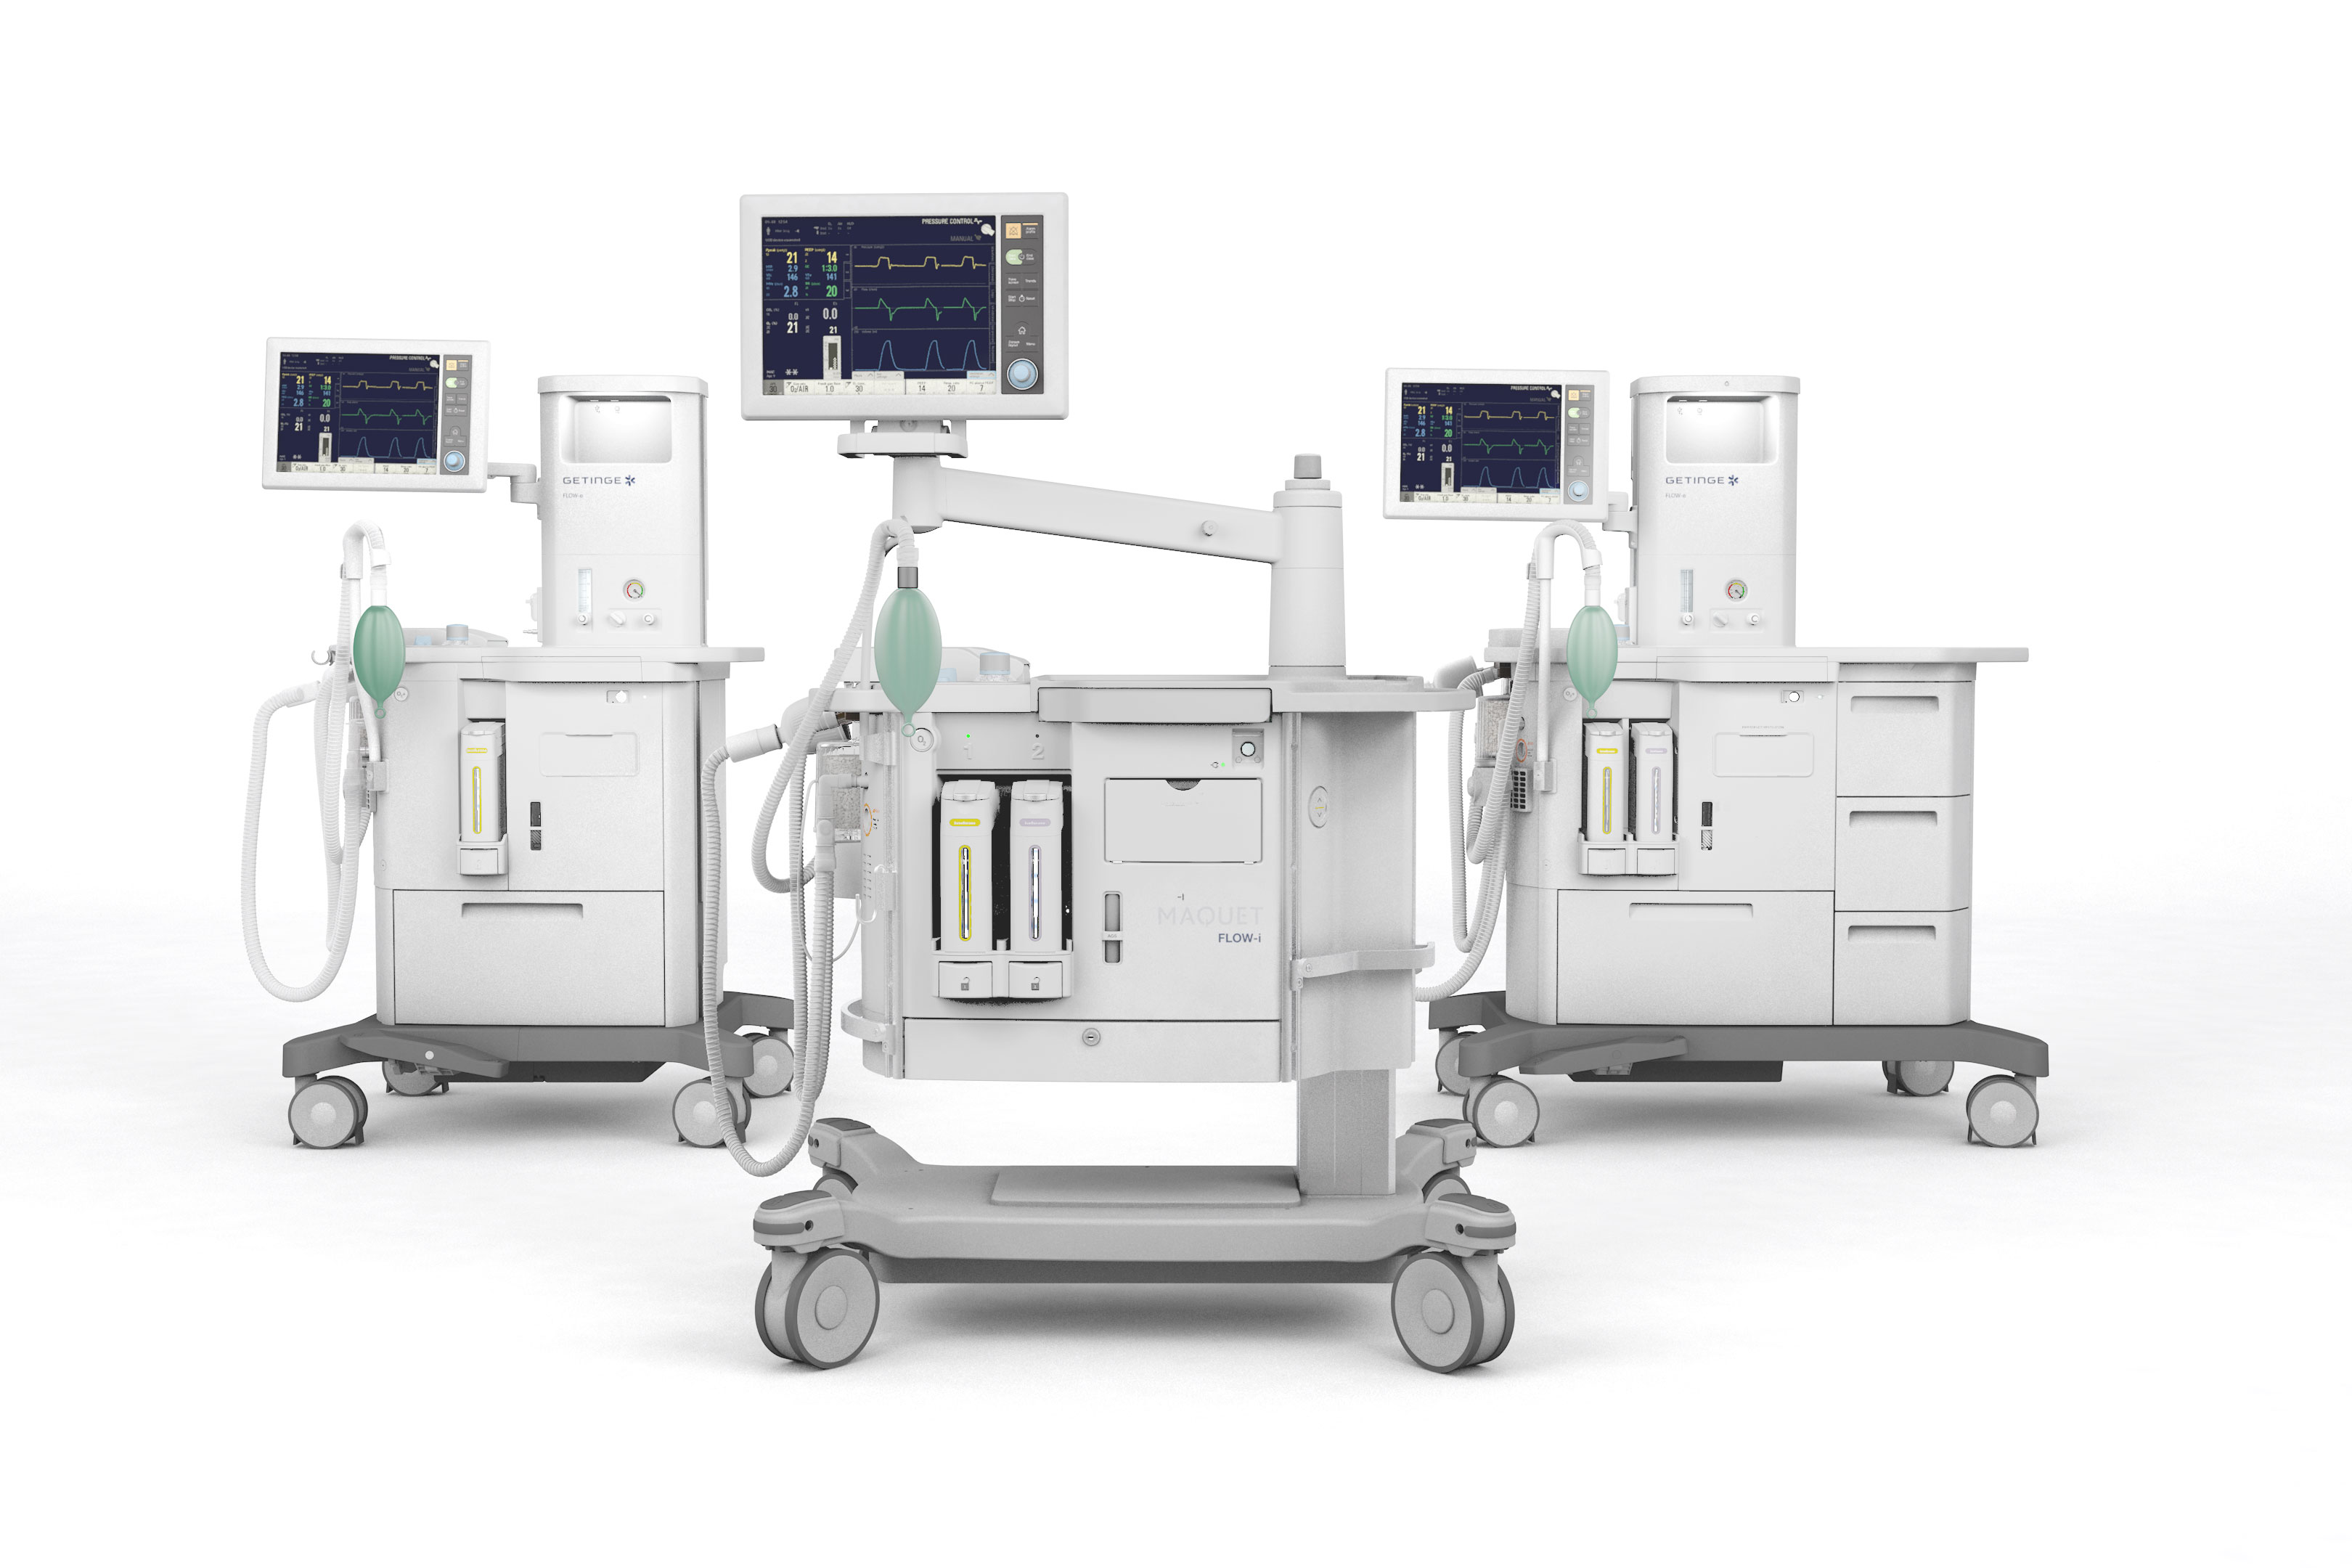 Flow Family Anesthesia machines